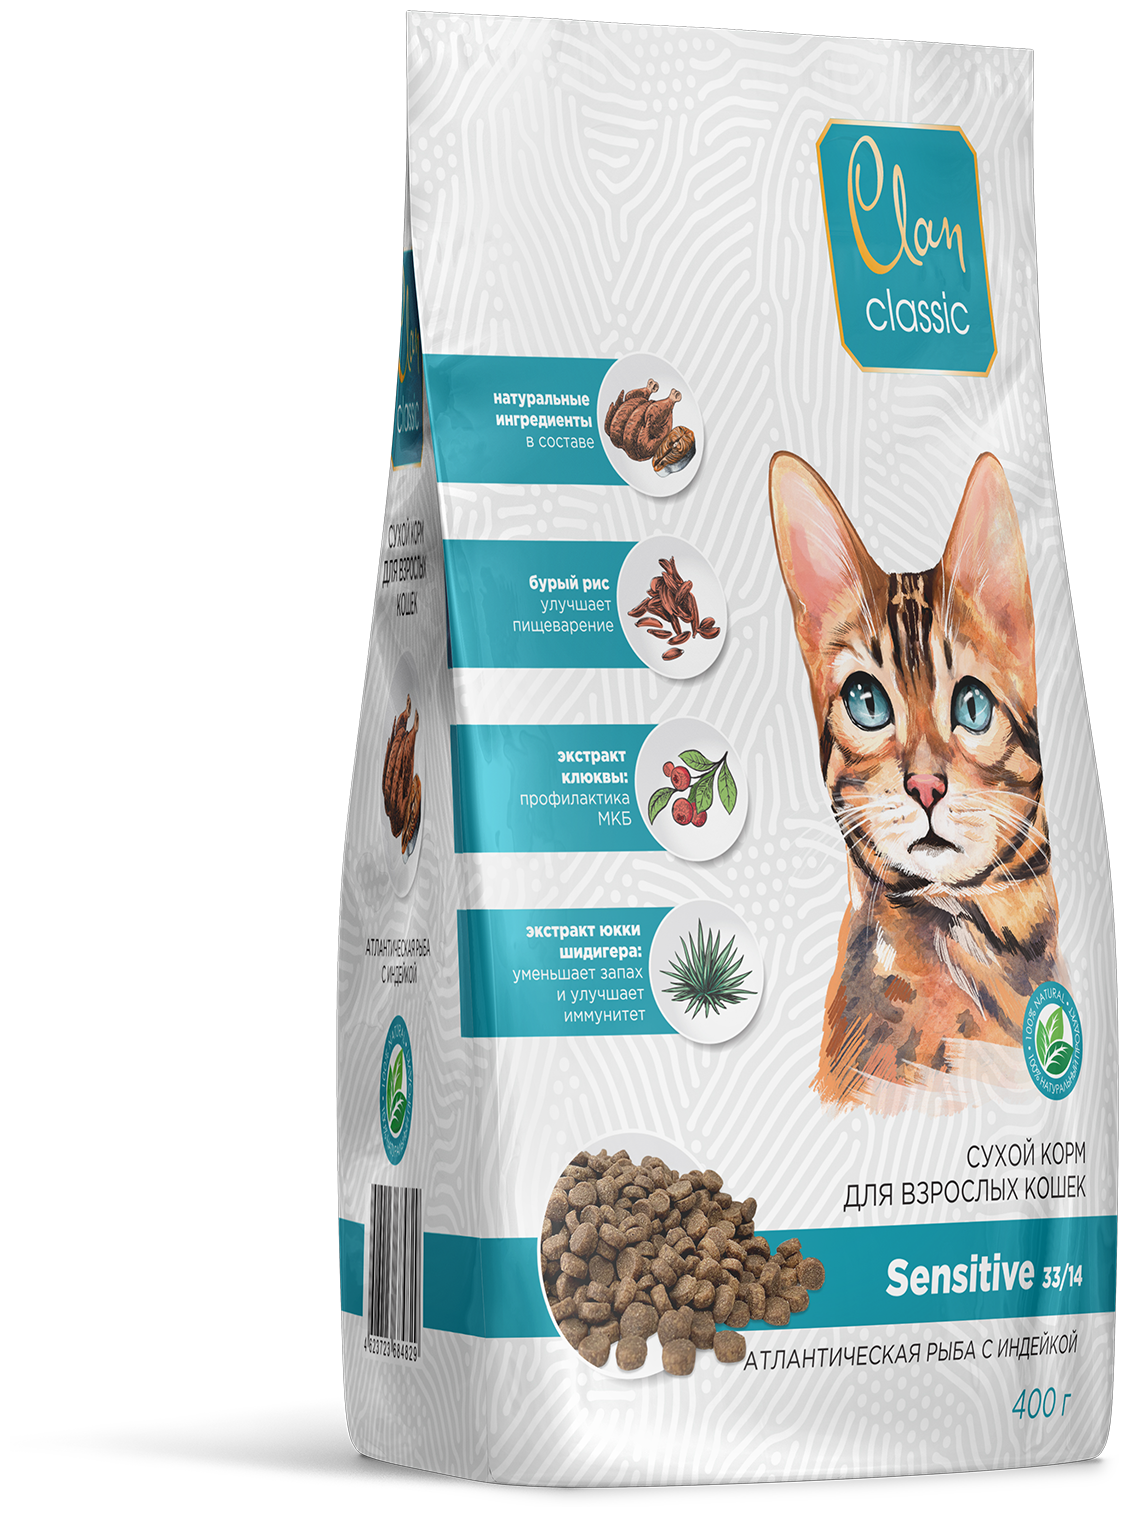 Clan Classic Sensitive. Сухой корм для кошек-с чувствительным пищеварением, С атлантической рыбой И индейкой, 400 гр.